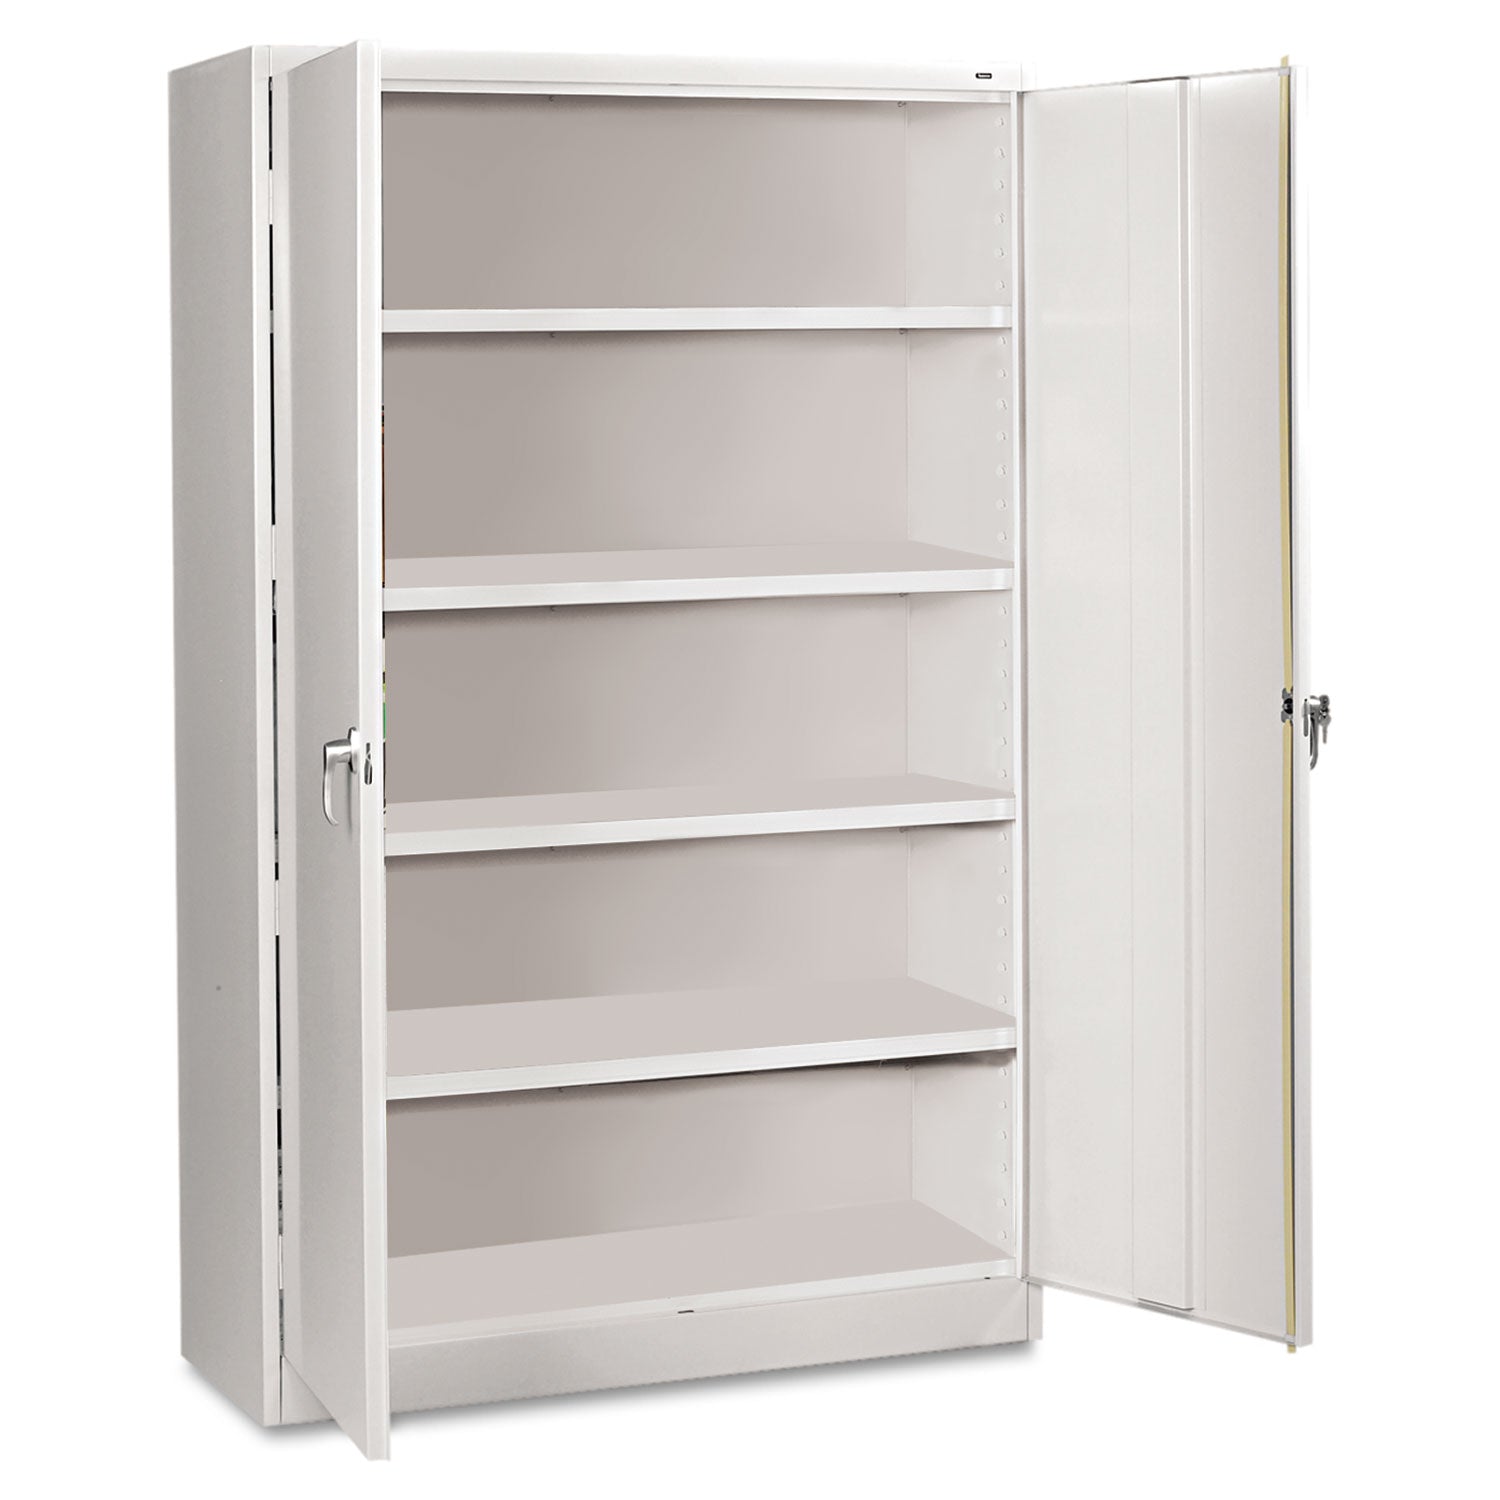 Assembled Jumbo Steel Storage Cabinet, 48w x 24d x 78h, Light Gray - 